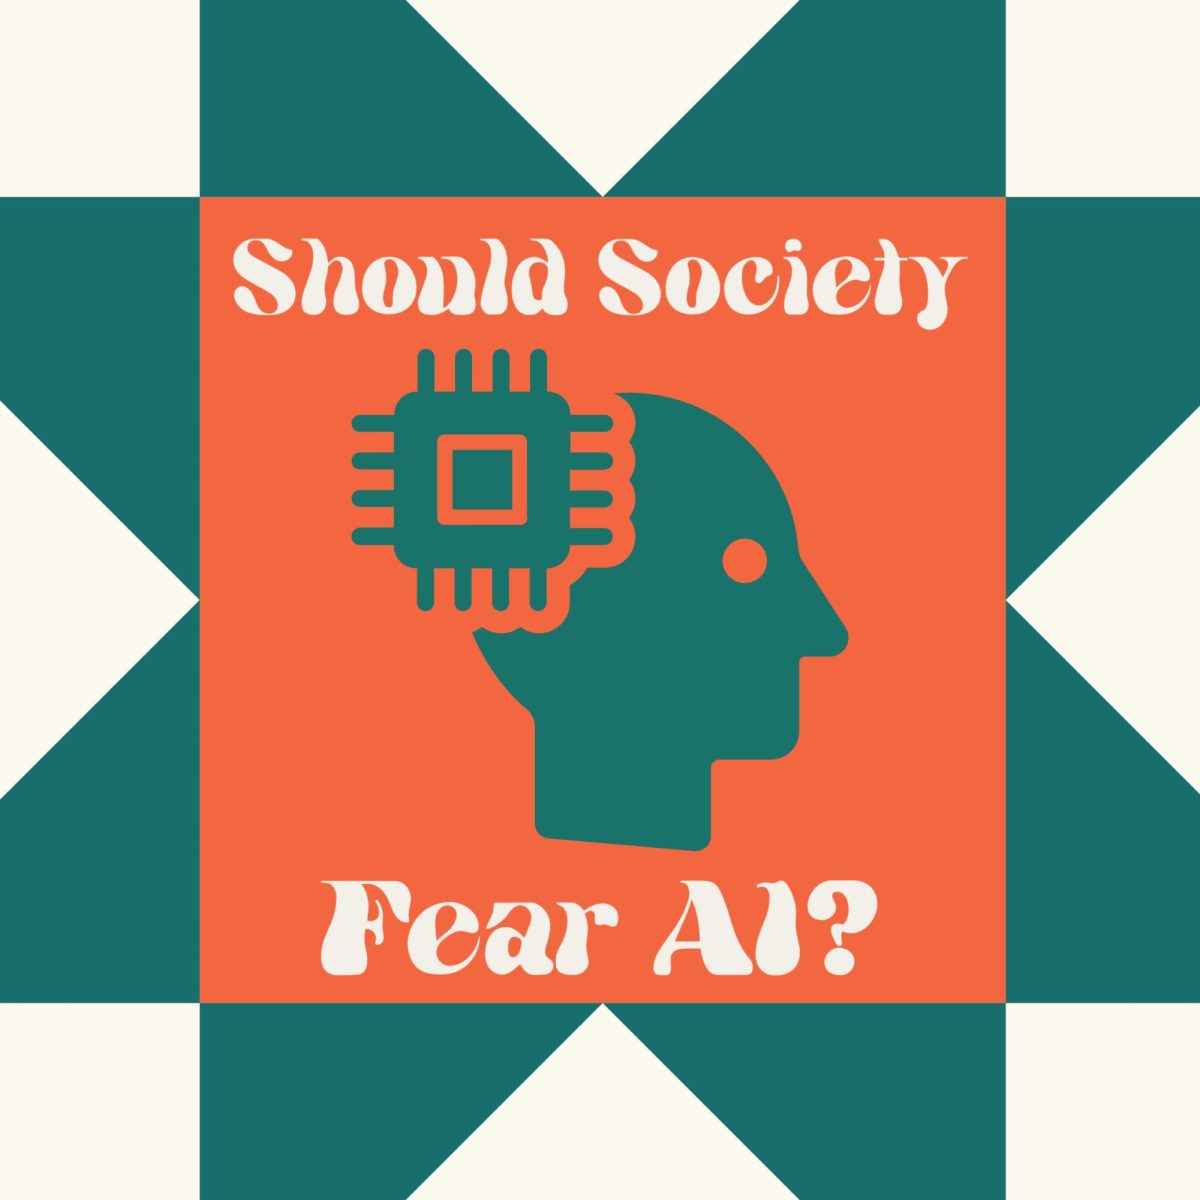 Should society fear AI?